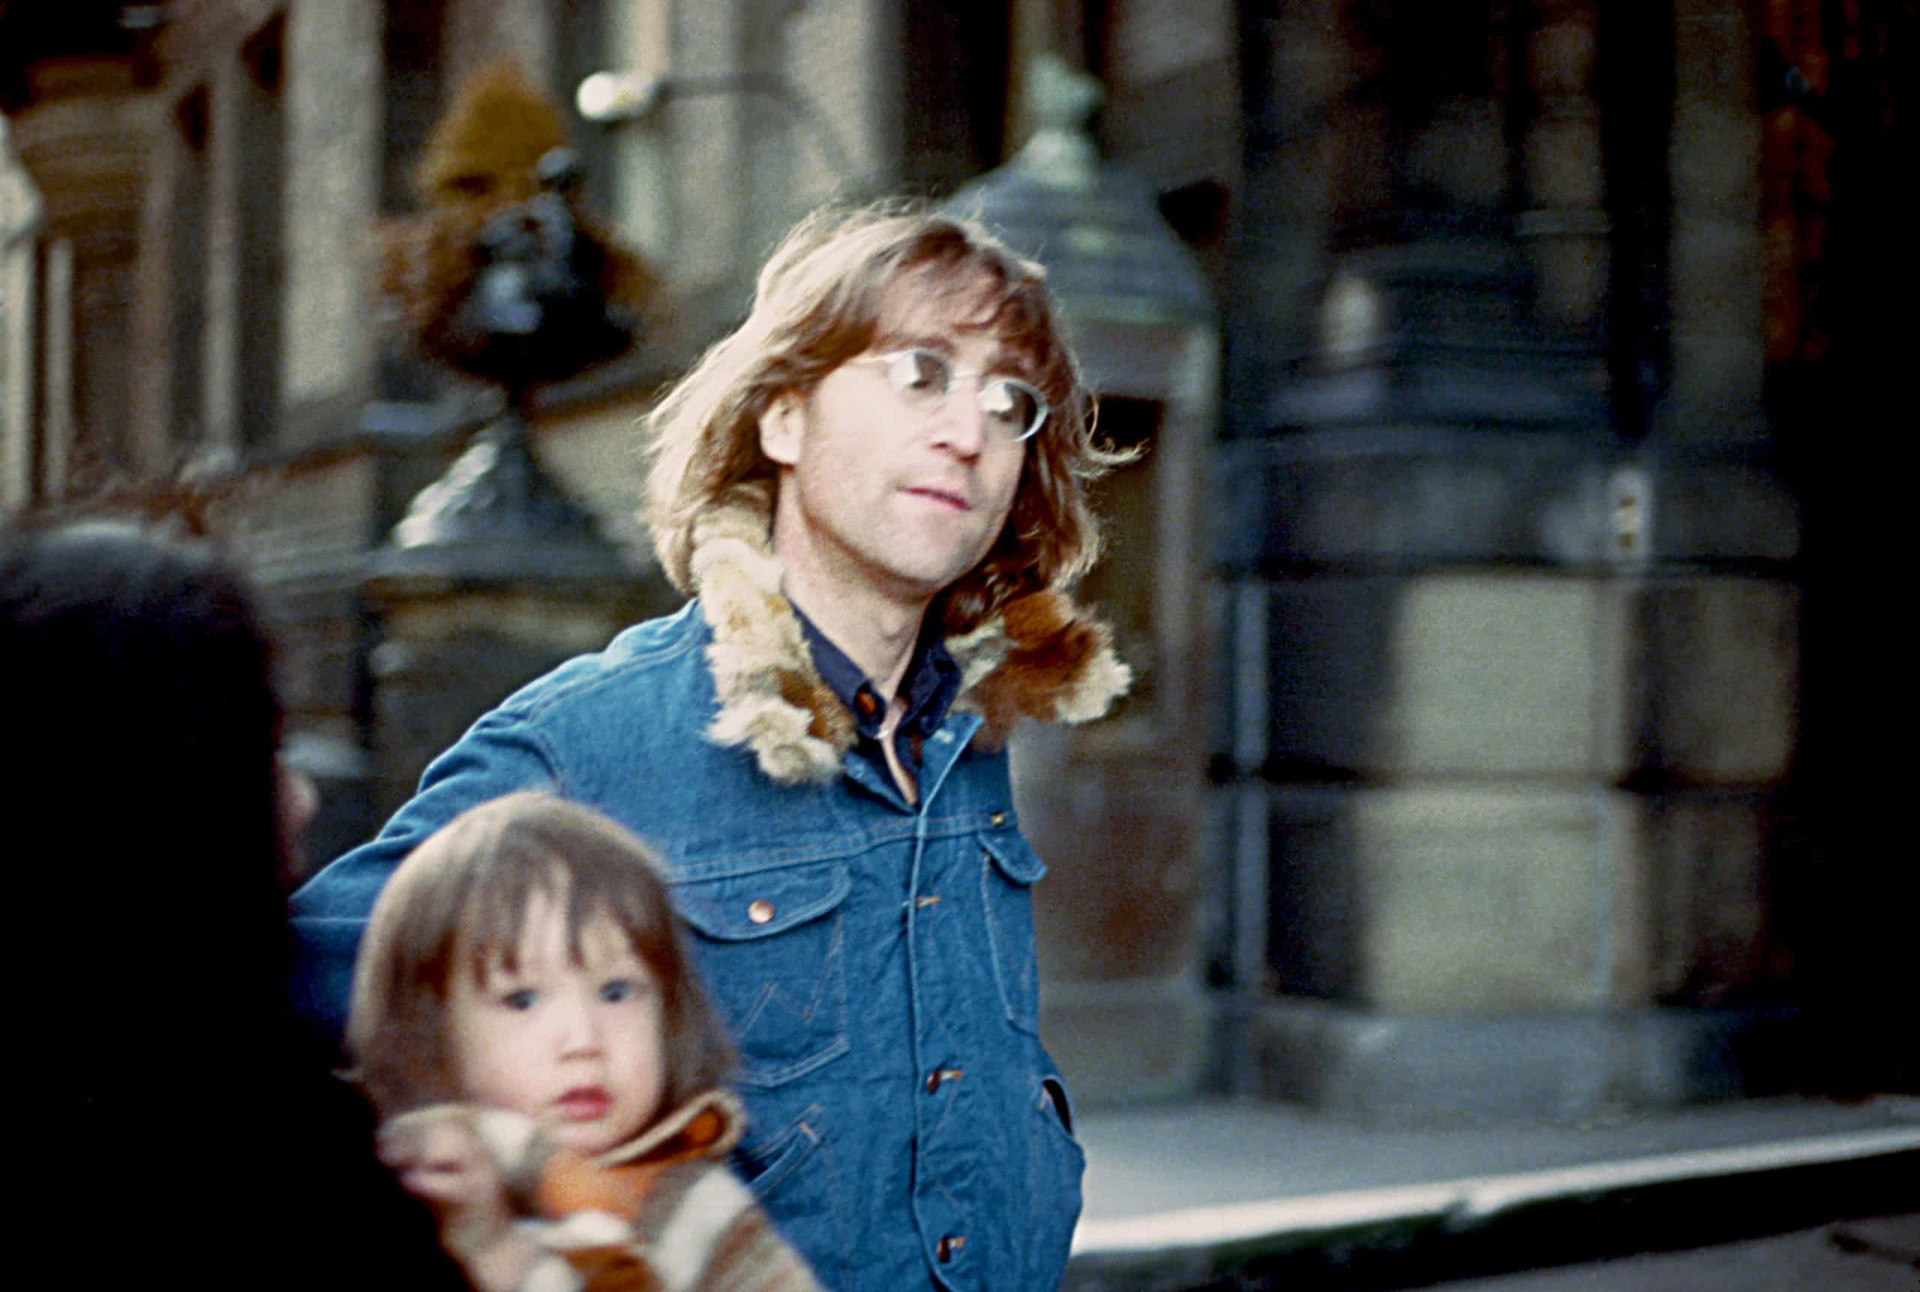 <p>Le 9 octobre 1975, le jour du 35ème anniversaire de l'artiste, Sean Lennon est née. La seconde famille de John Lennon était donc au complet. On peut les voir tous les trois sur ce cliché rare de 1977, entrant dans leur bâtiment.</p><p><a href="https://www.msn.com/fr-ca/community/channel/vid-7xx8mnucu55yw63we9va2gwr7uihbxwc68fxqp25x6tg4ftibpra?cvid=94631541bc0f4f89bfd59158d696ad7e">Suivez-nous et accédez tous les jours à du contenu exclusif</a></p>